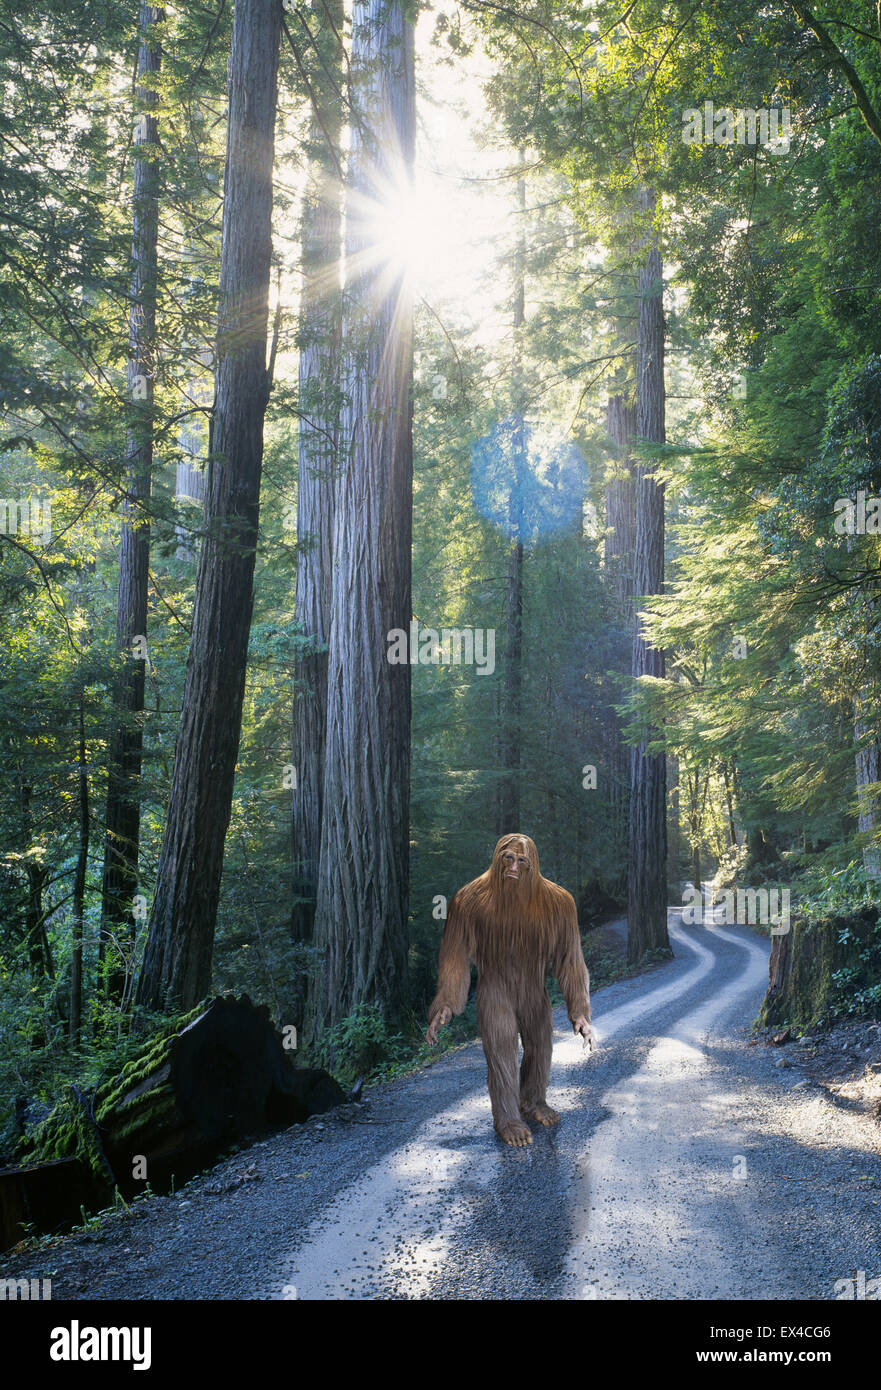 Un Sasquatch, également connu sous le nom de Bigfoot, déplace tranquillement le long d'une route forestière dans une forêt tropicale dense dans le nord-ouest du Pacifique. Banque D'Images